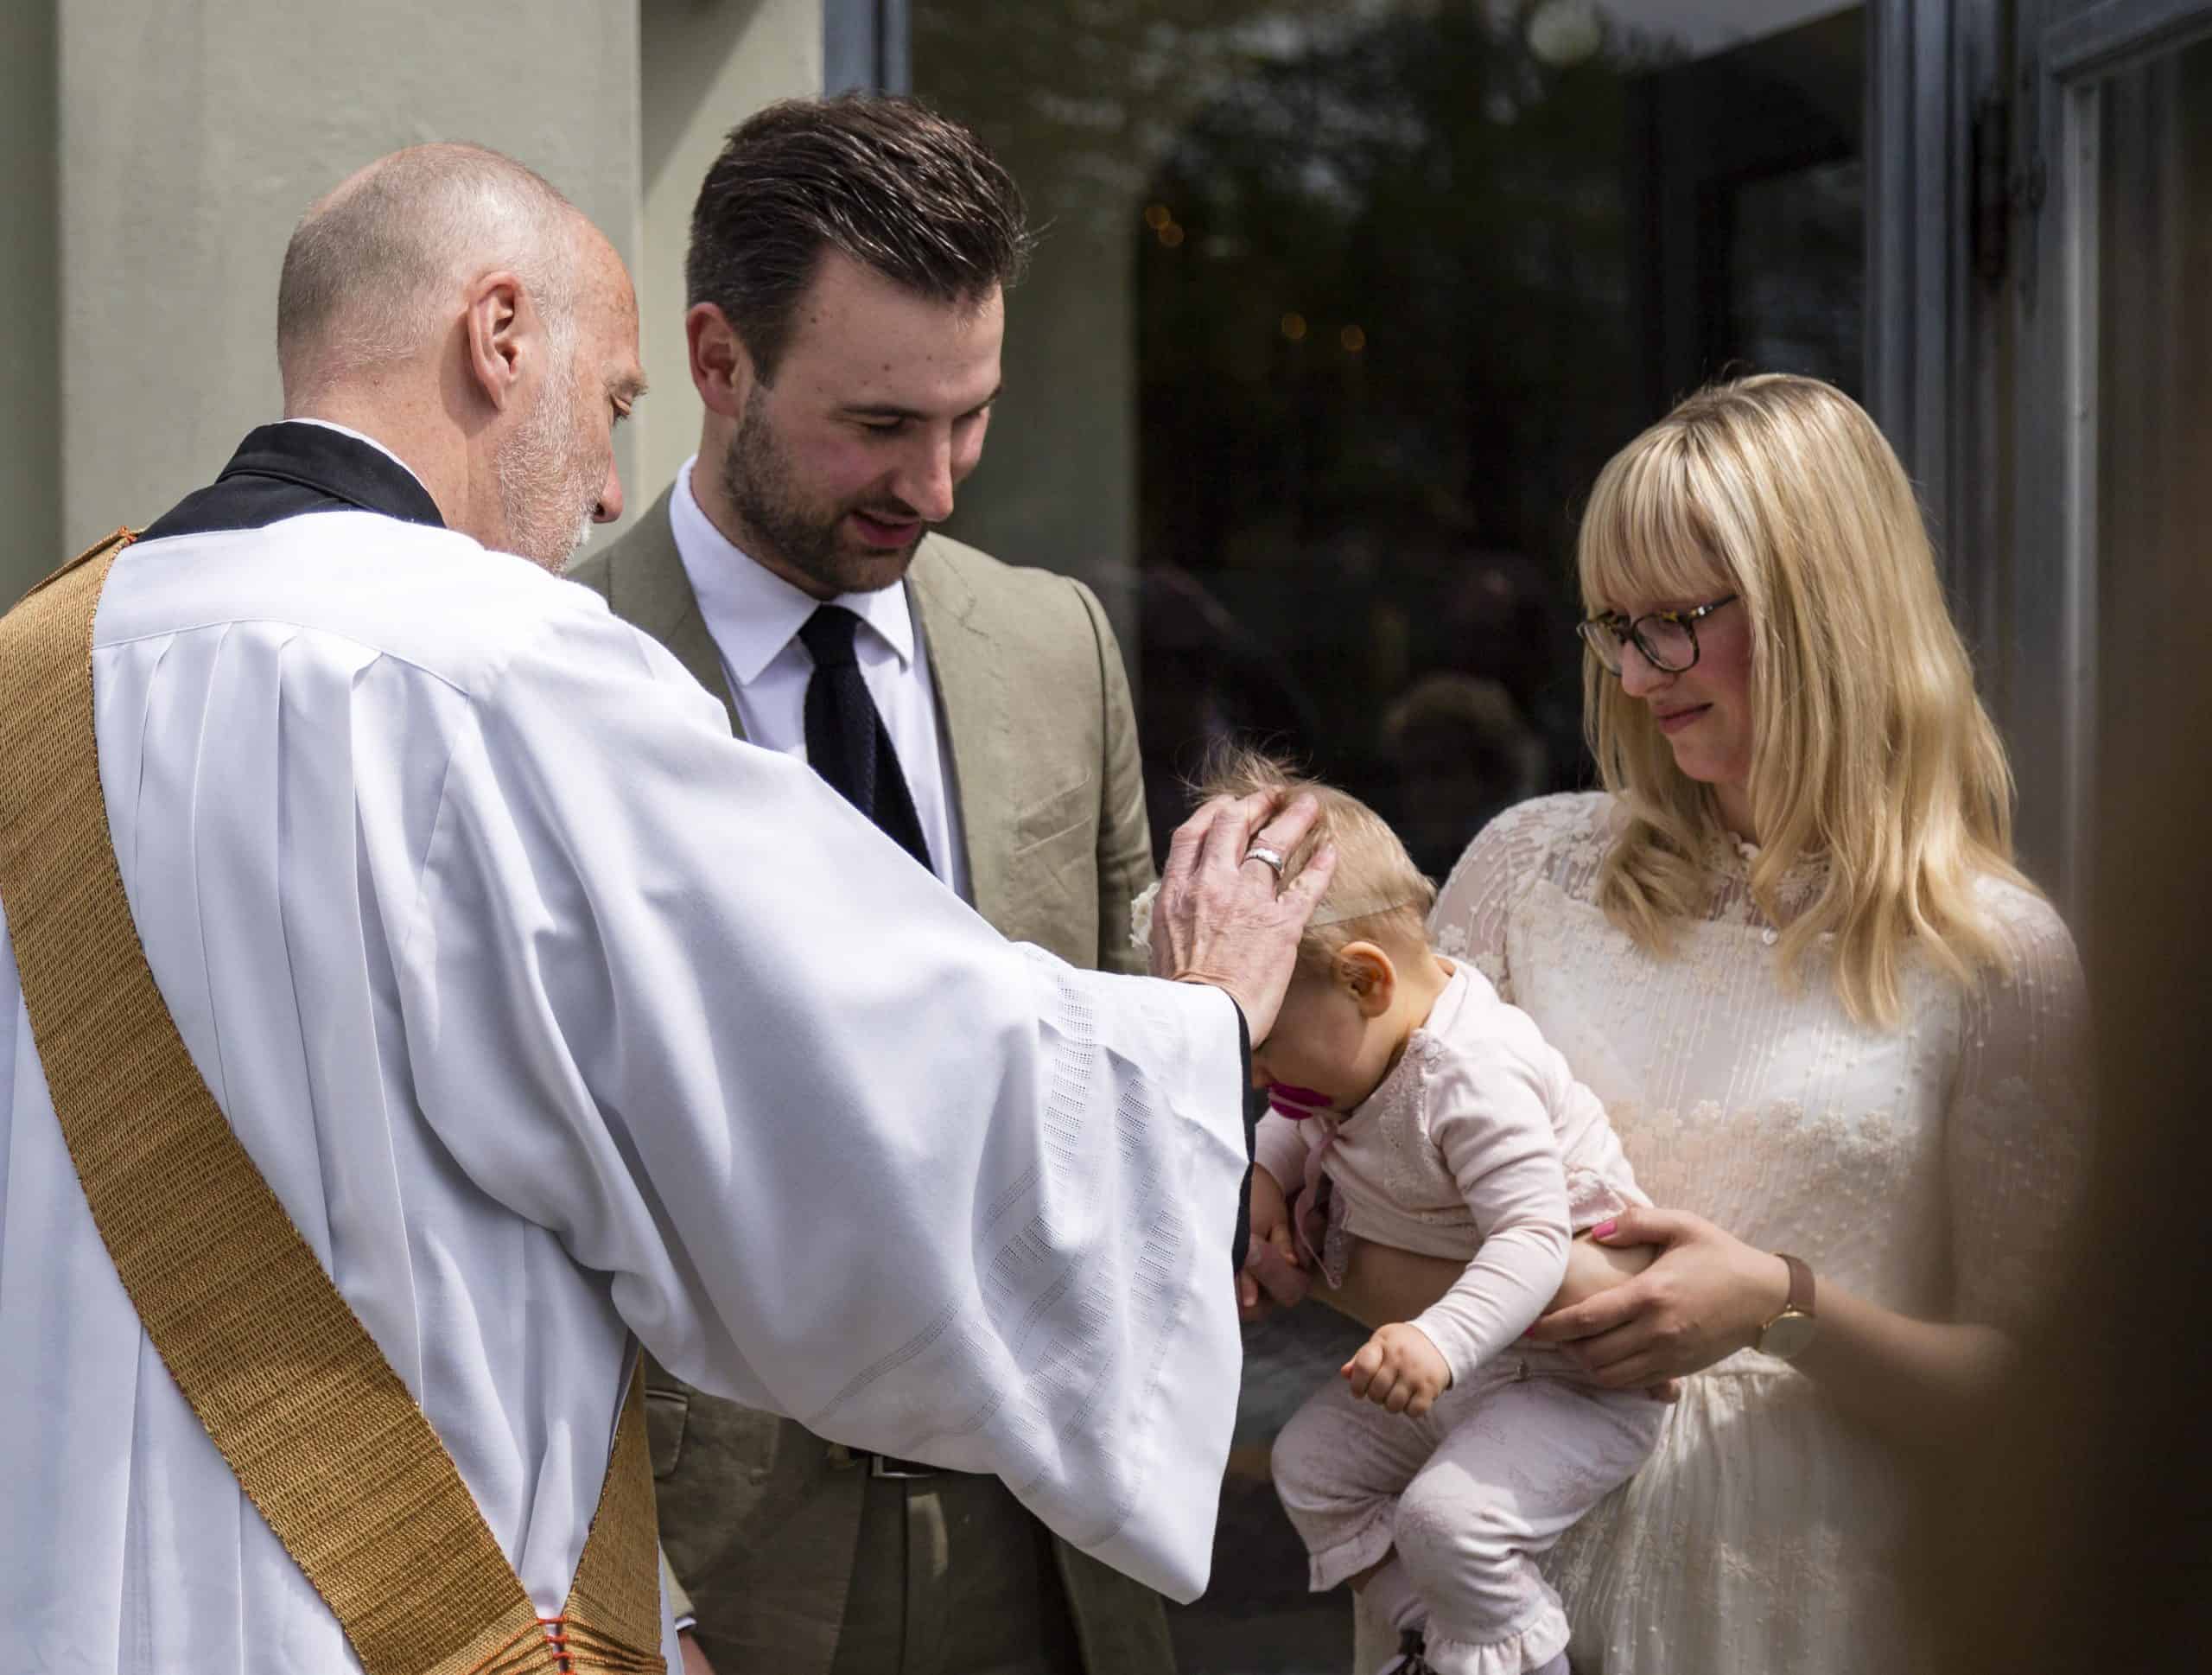 Fotografie Taufe Baby auf Arm der Mutter, Pfarrer legt Hand auf den Kopf auf